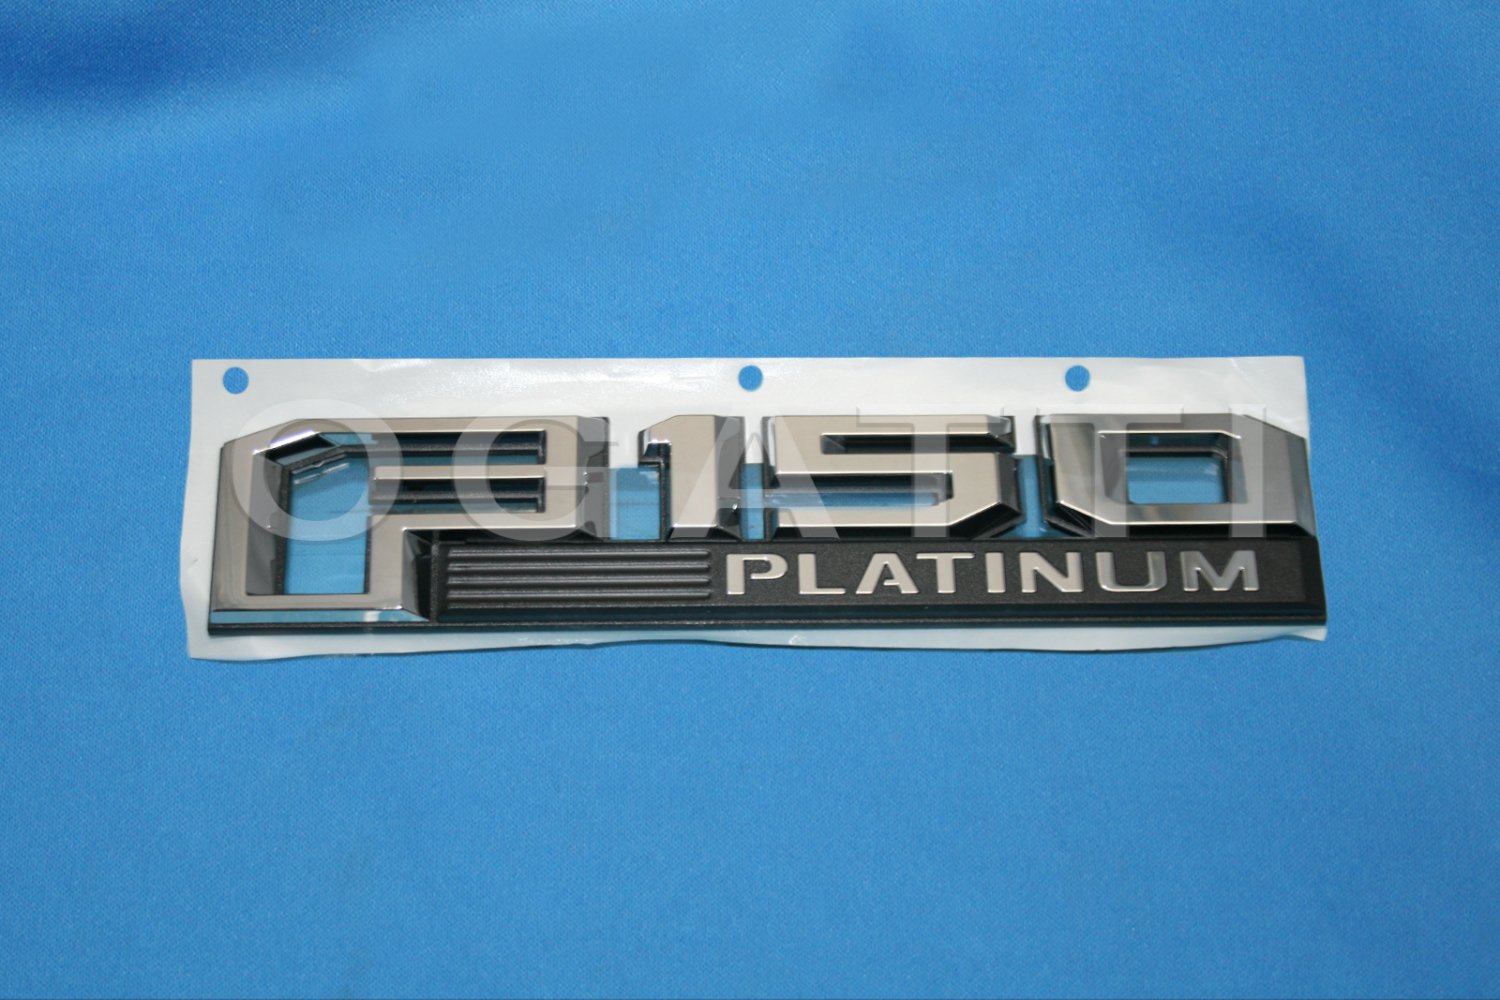 dfo flauncher platinum emblem